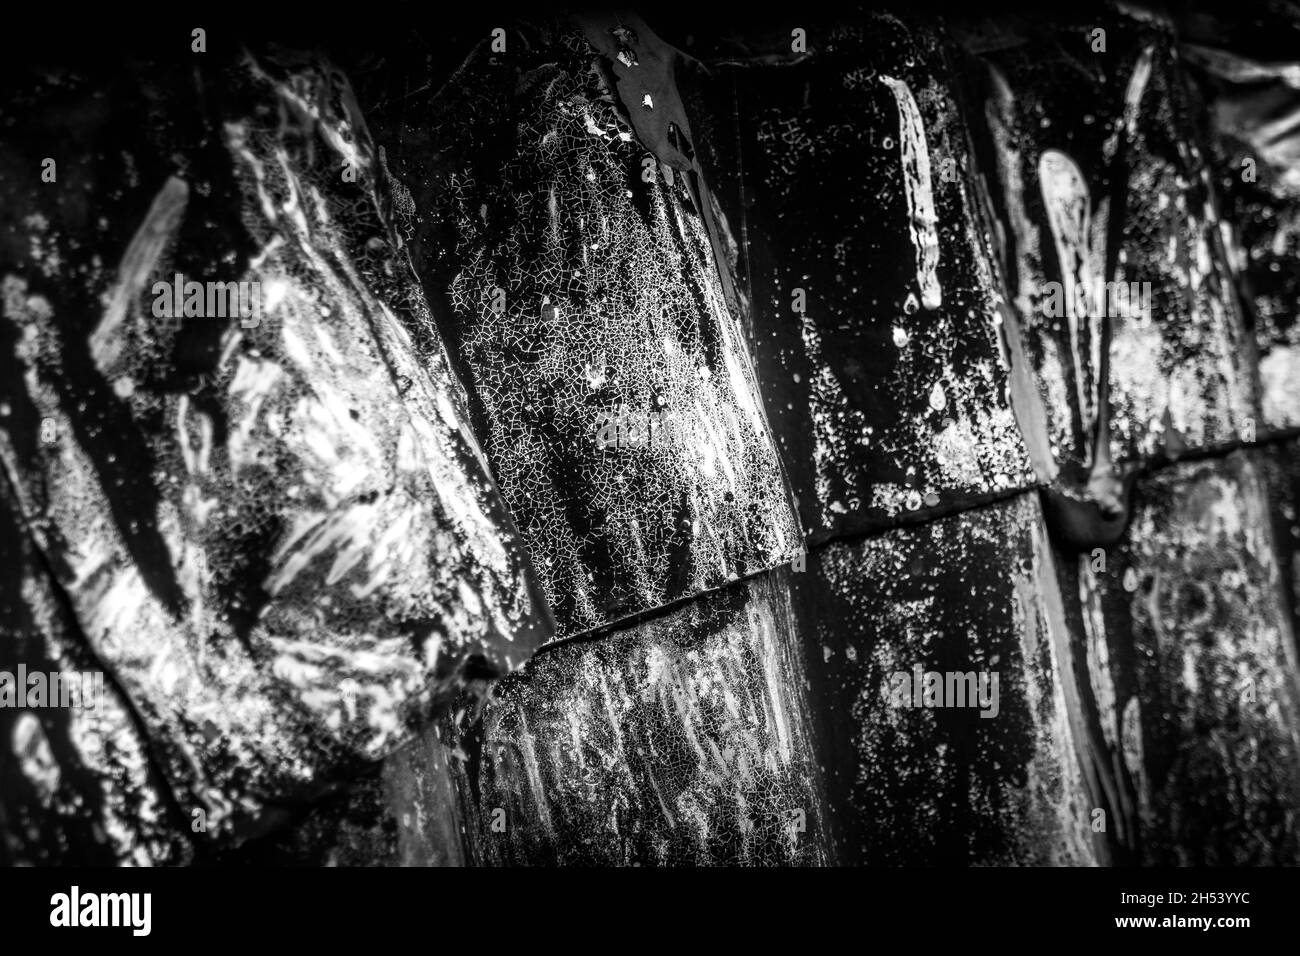 Image abstraite en noir et blanc de la surface texturée de l'ancienne cabane de Nissen à Stanton, Suffolk.Personne. Banque D'Images